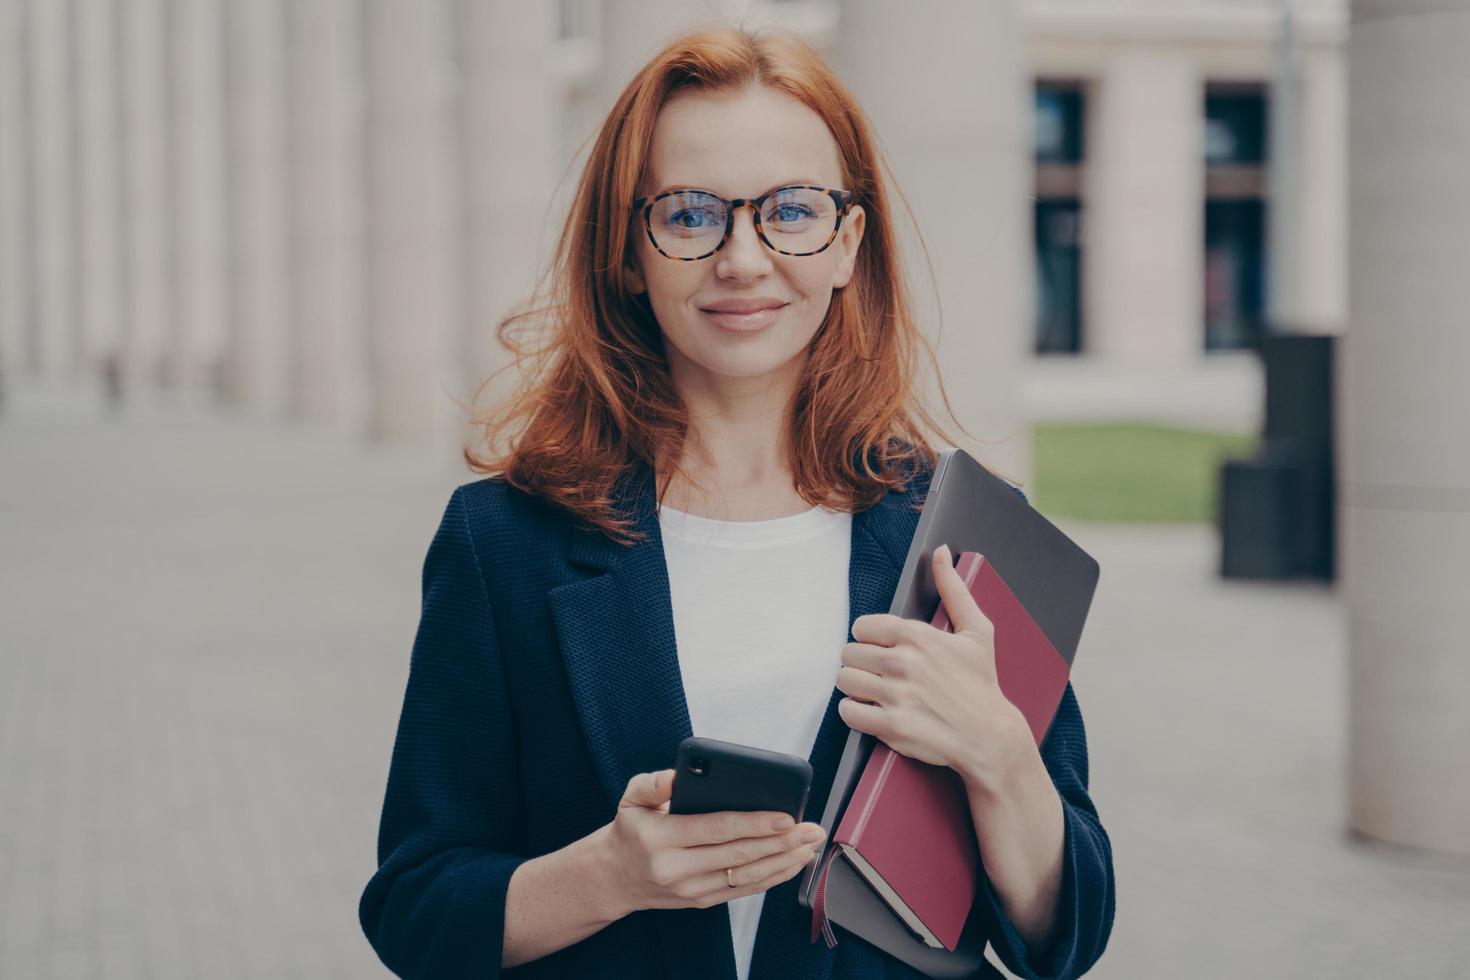 consultora de negócios feminina ruiva linda confiante segurando smartphone moderno e laptop foto